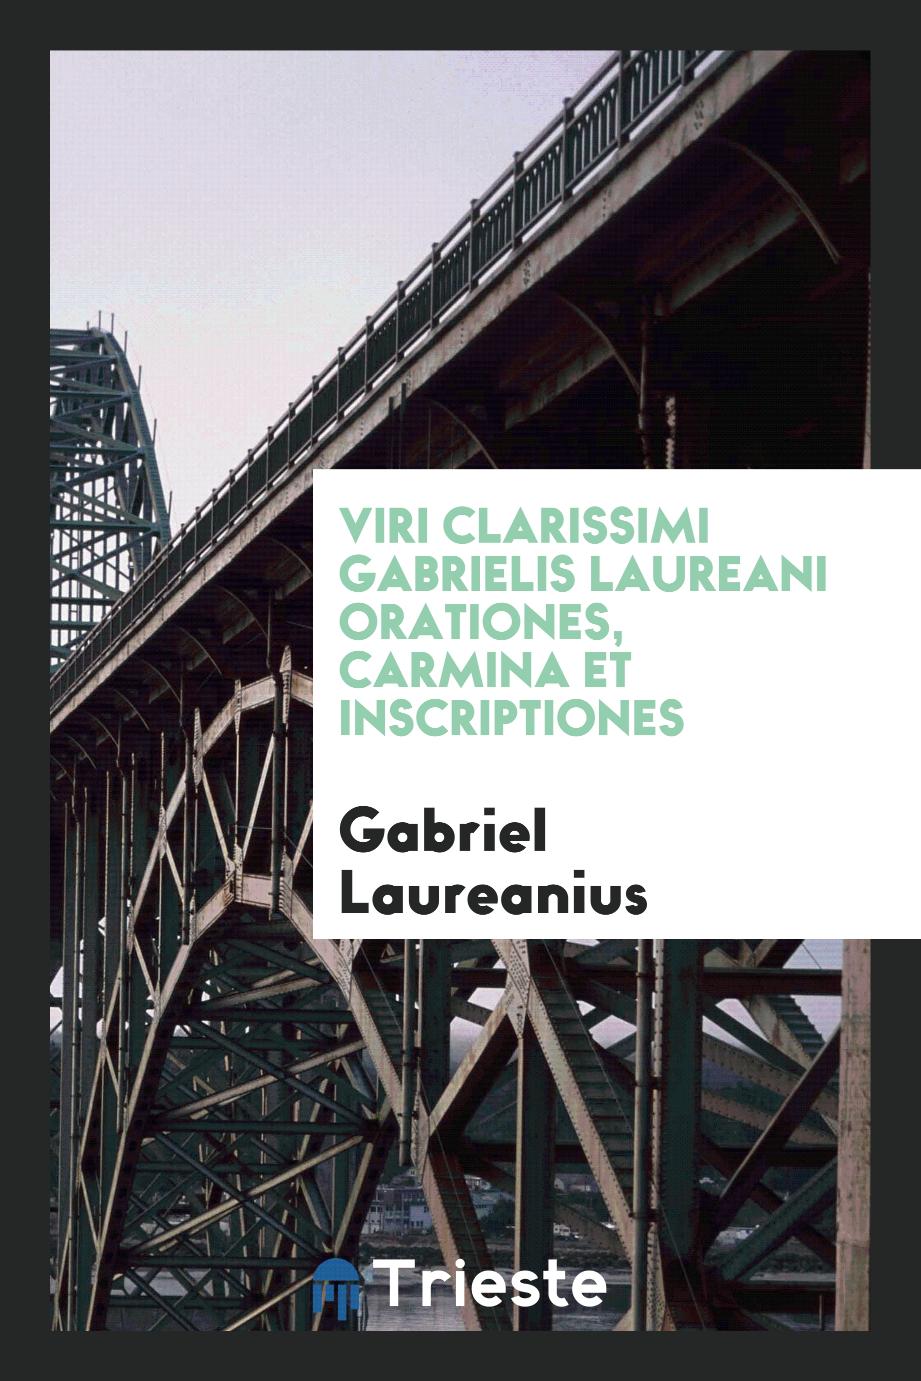 Viri Clarissimi Gabrielis Laureani Orationes, Carmina et Inscriptiones